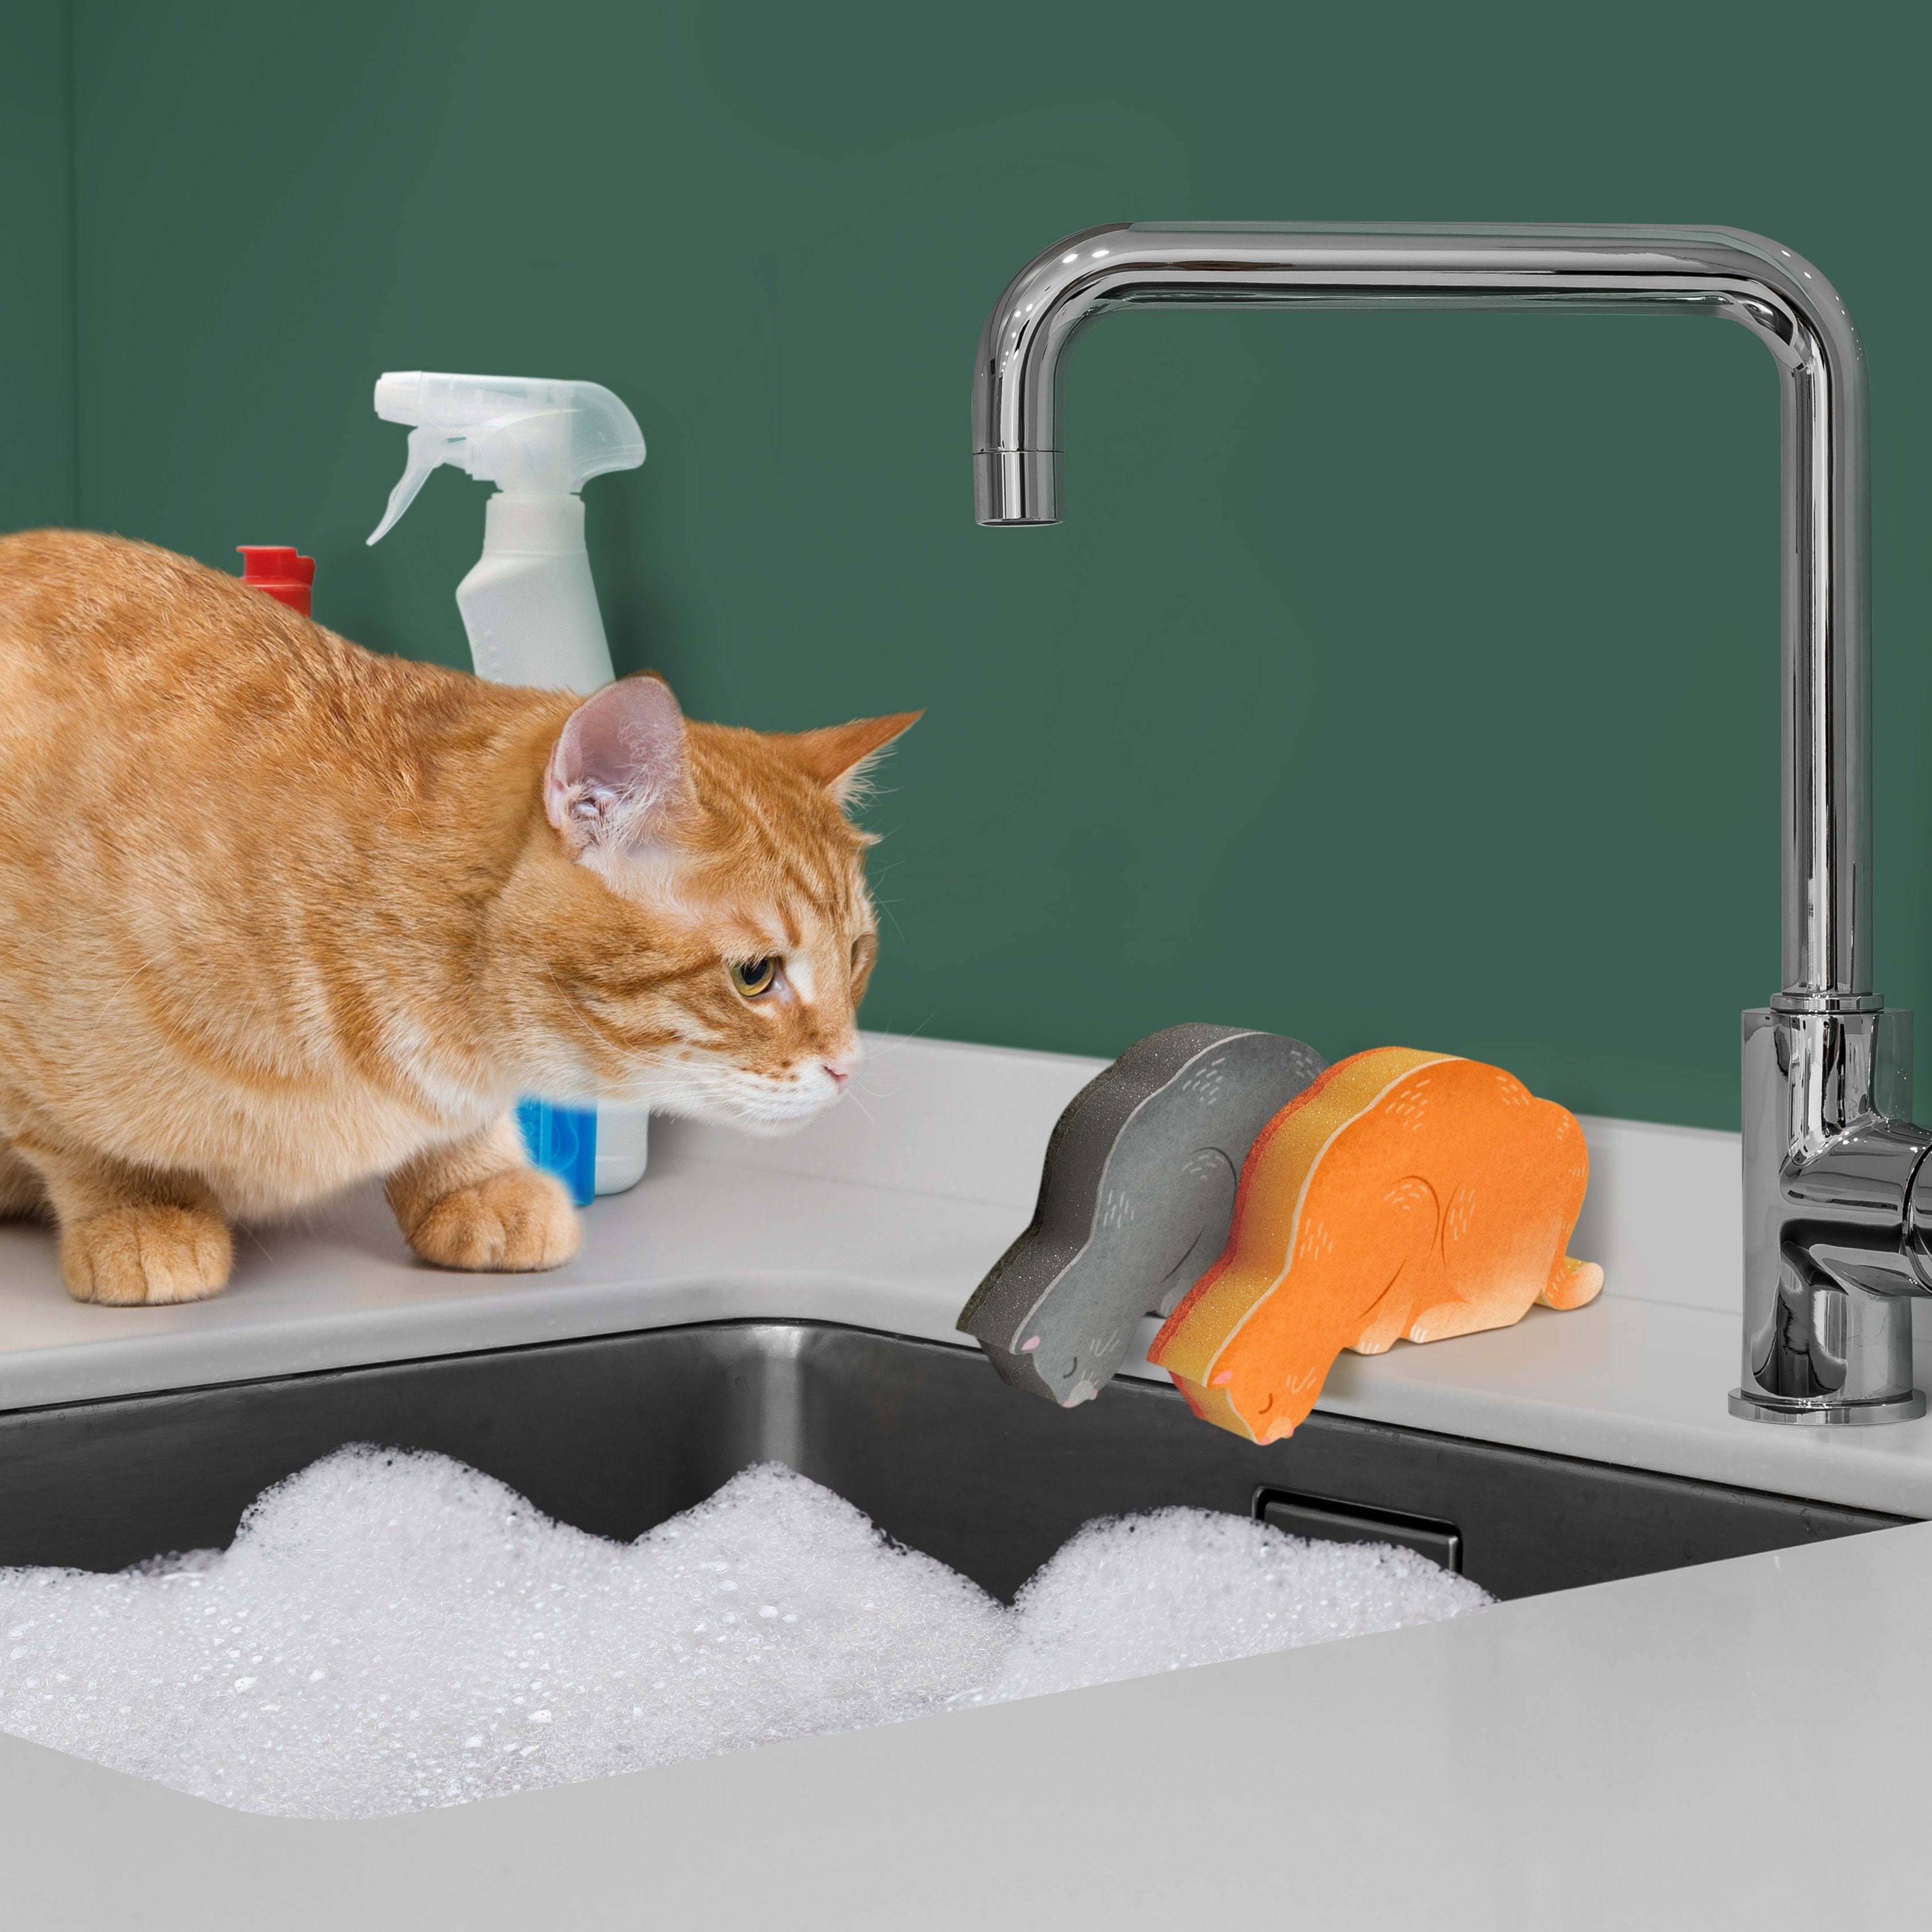 Cat Themed Kitchen Accessories, Cat Sponges